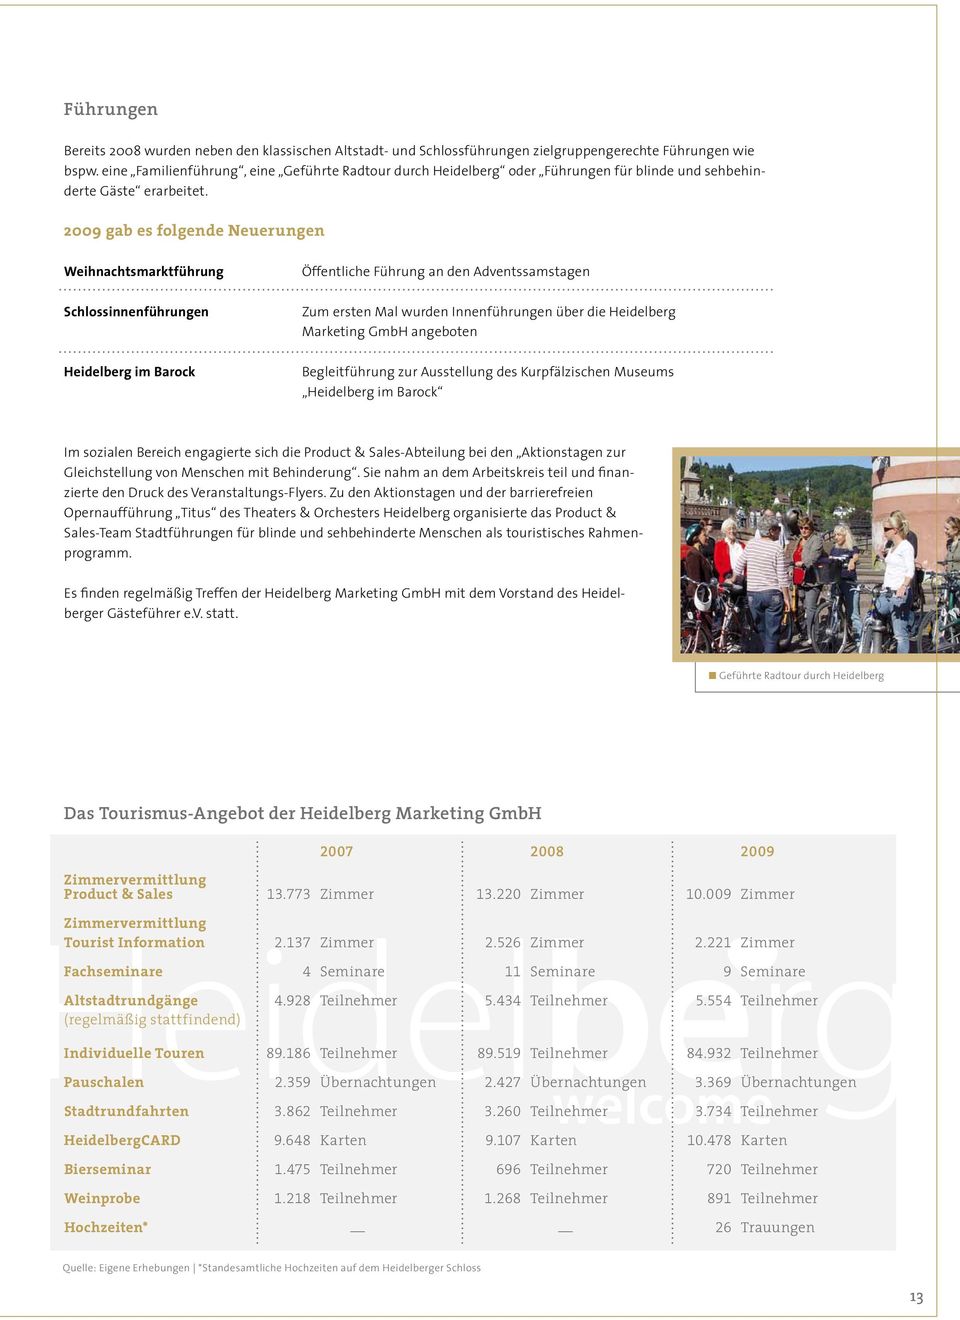 2009 gab es folgende Neuerungen Weihnachtsmarktführung Öffentliche Führung an den Adventssamstagen Schlossinnenführungen Zum ersten Mal wurden Innenführungen über die Heidelberg Marketing GmbH